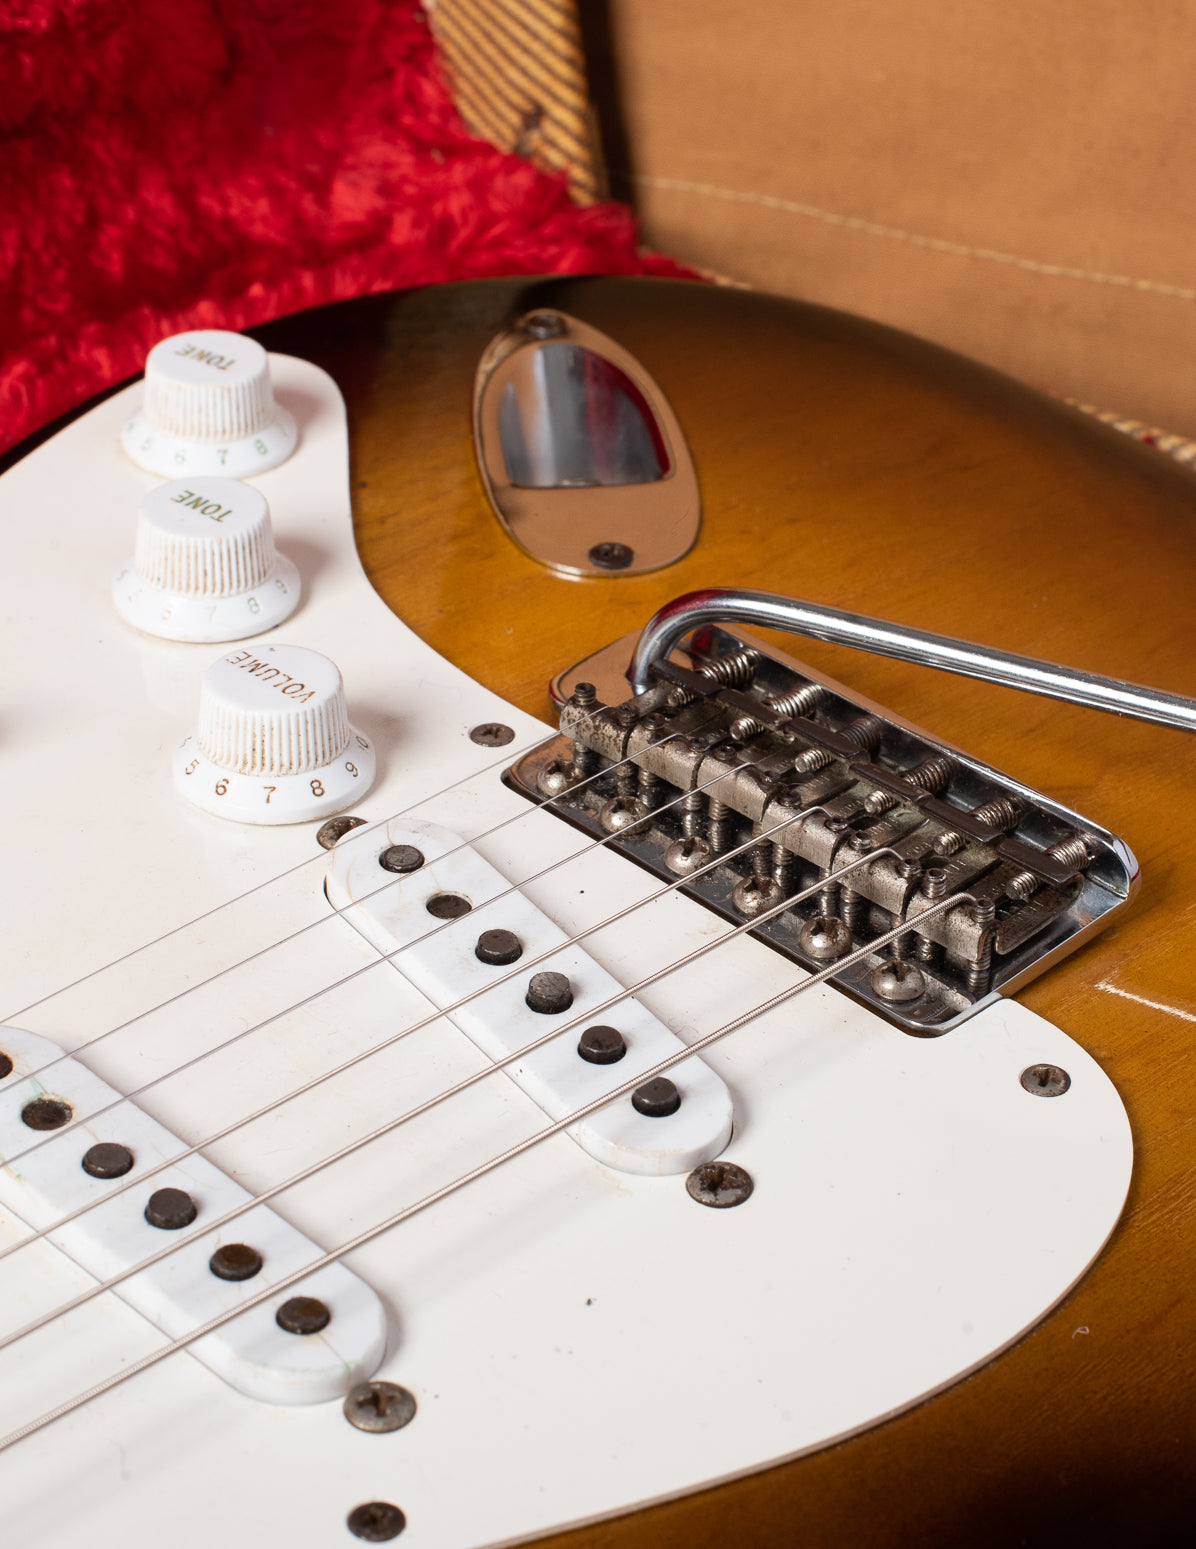 1954 Fender Stratocaster saddles